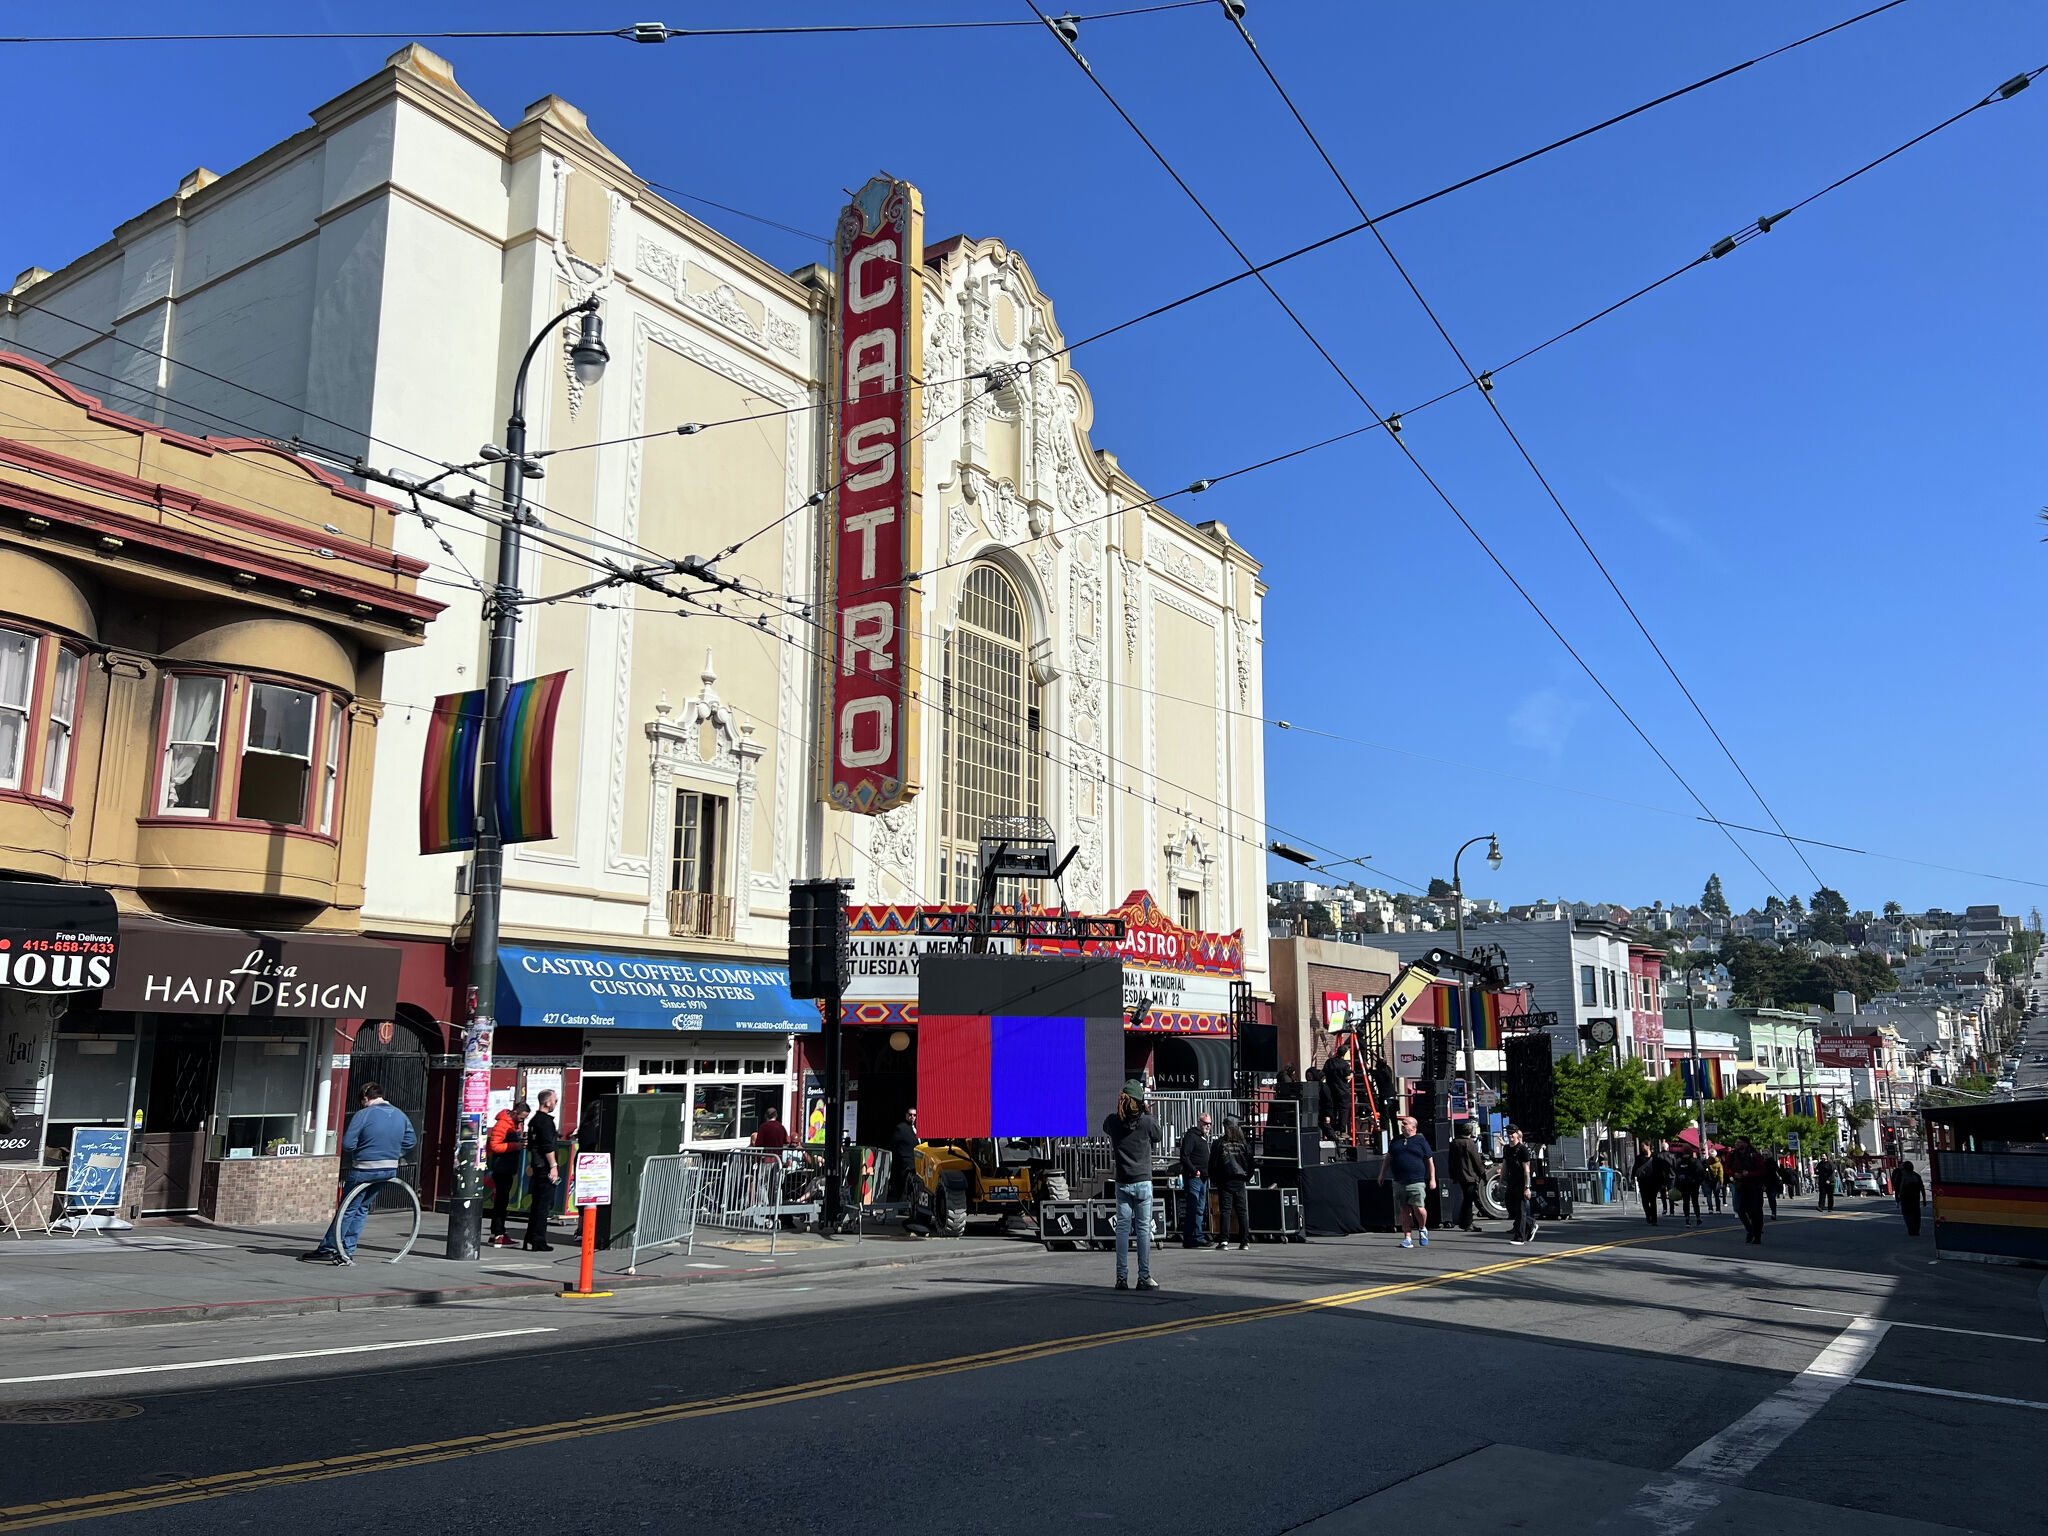 Castro Theatre, San Francisco